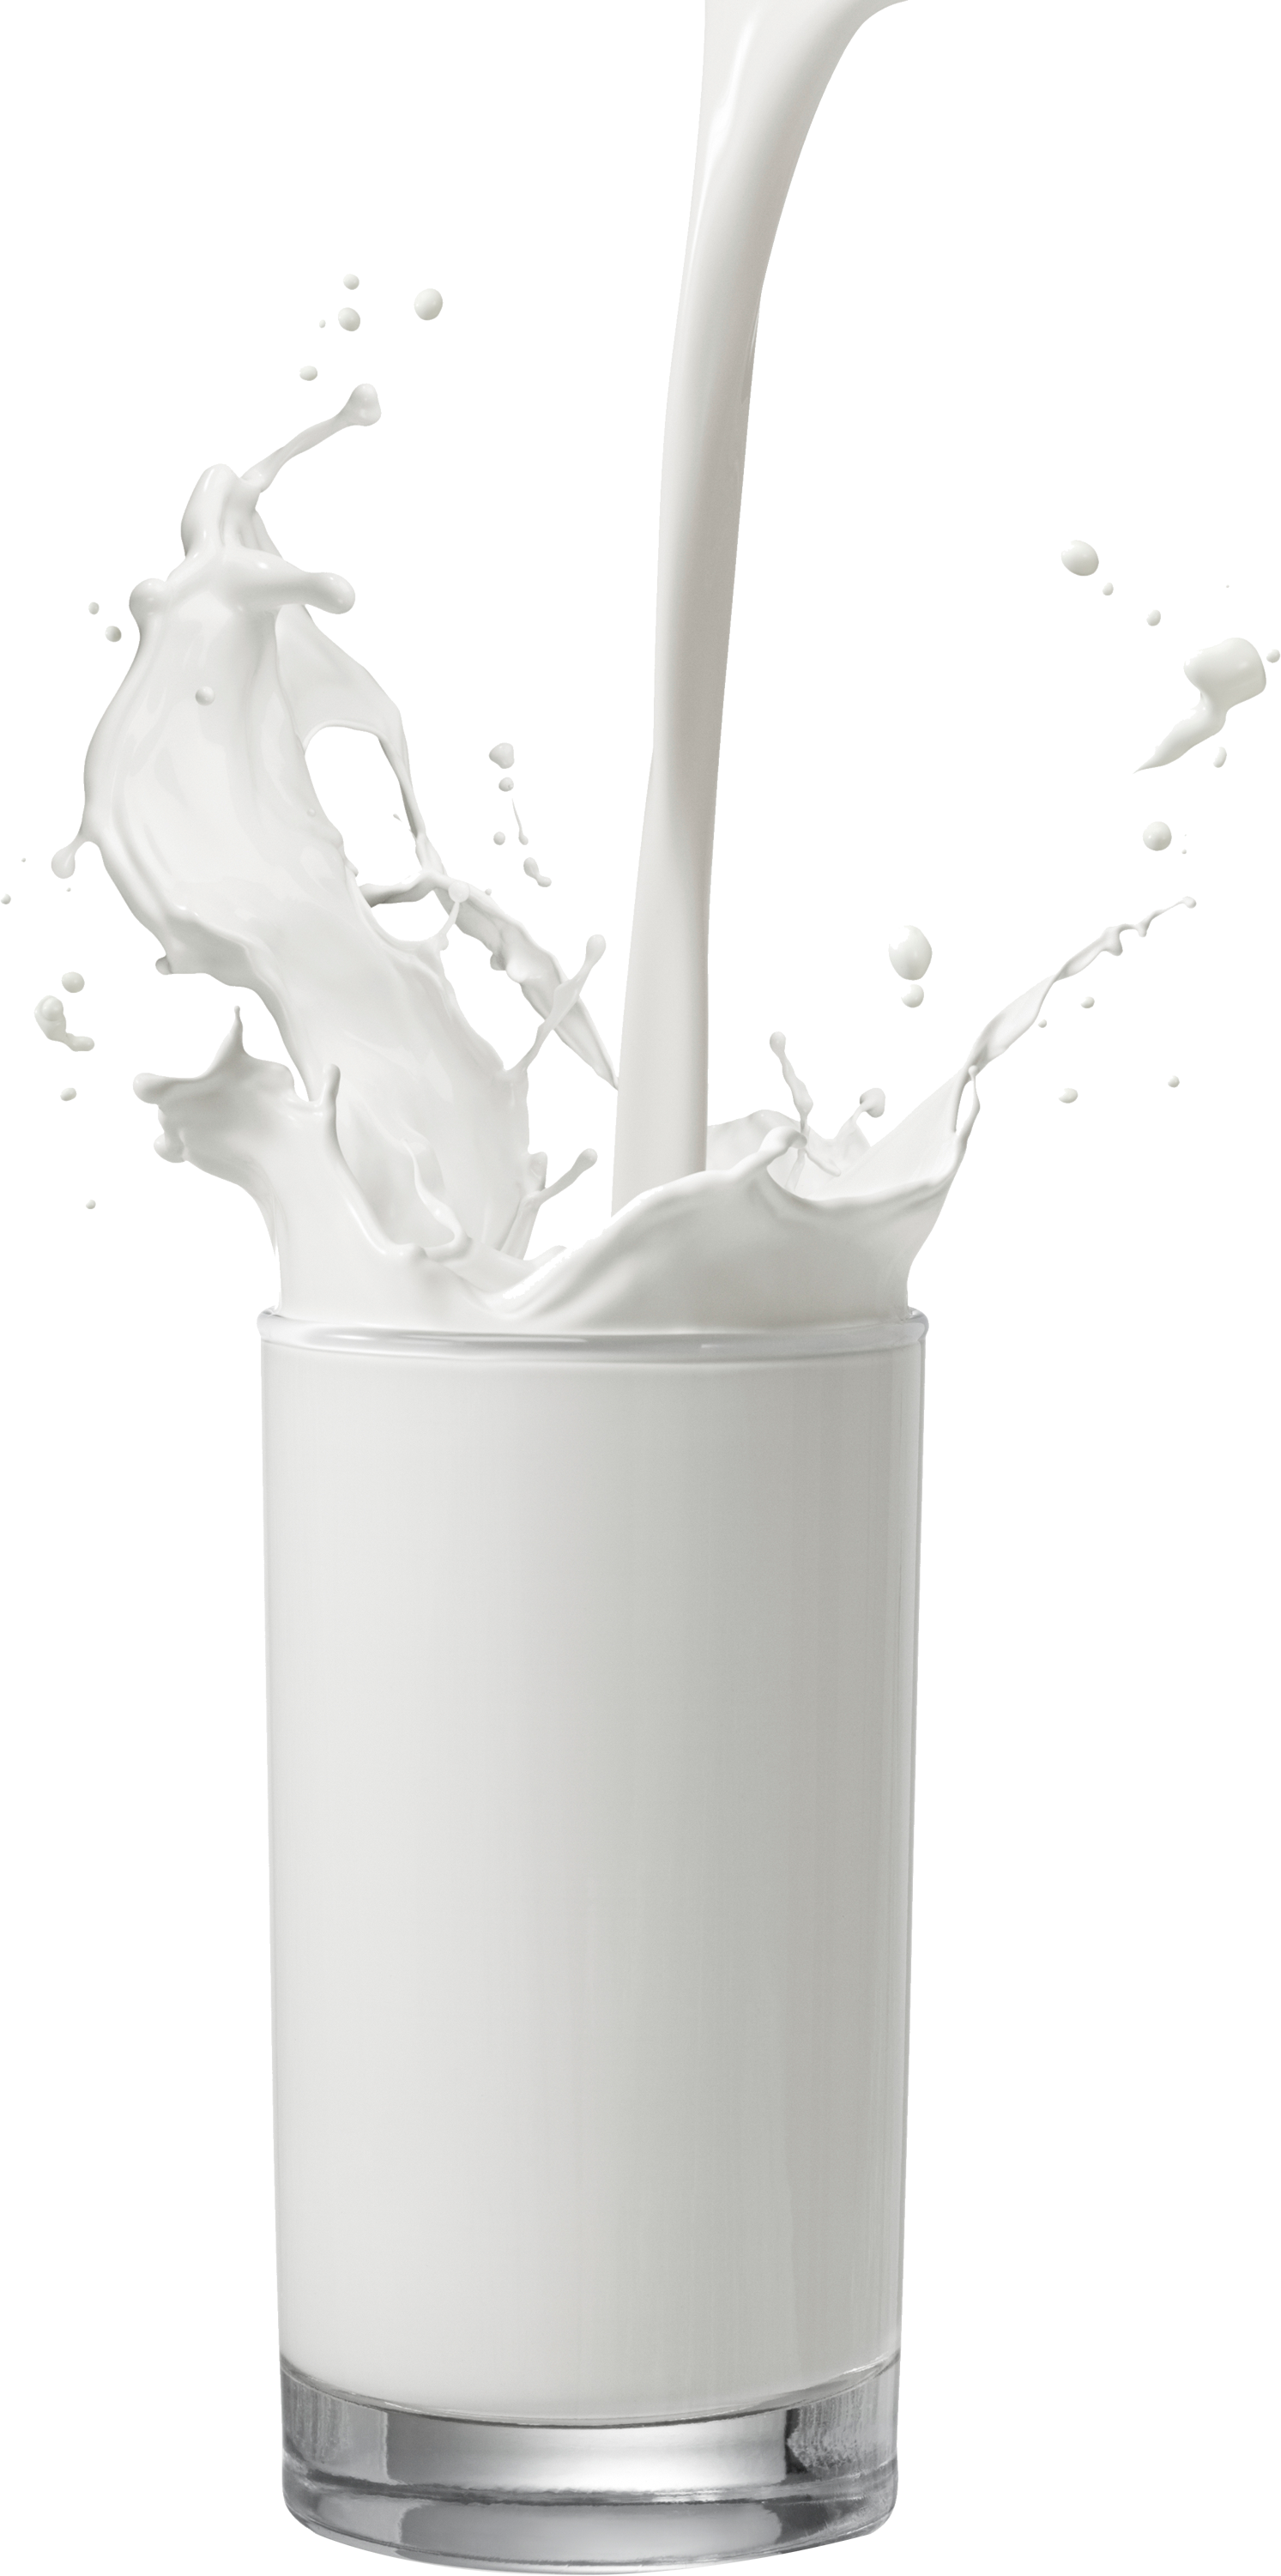 Milk Transparent Images